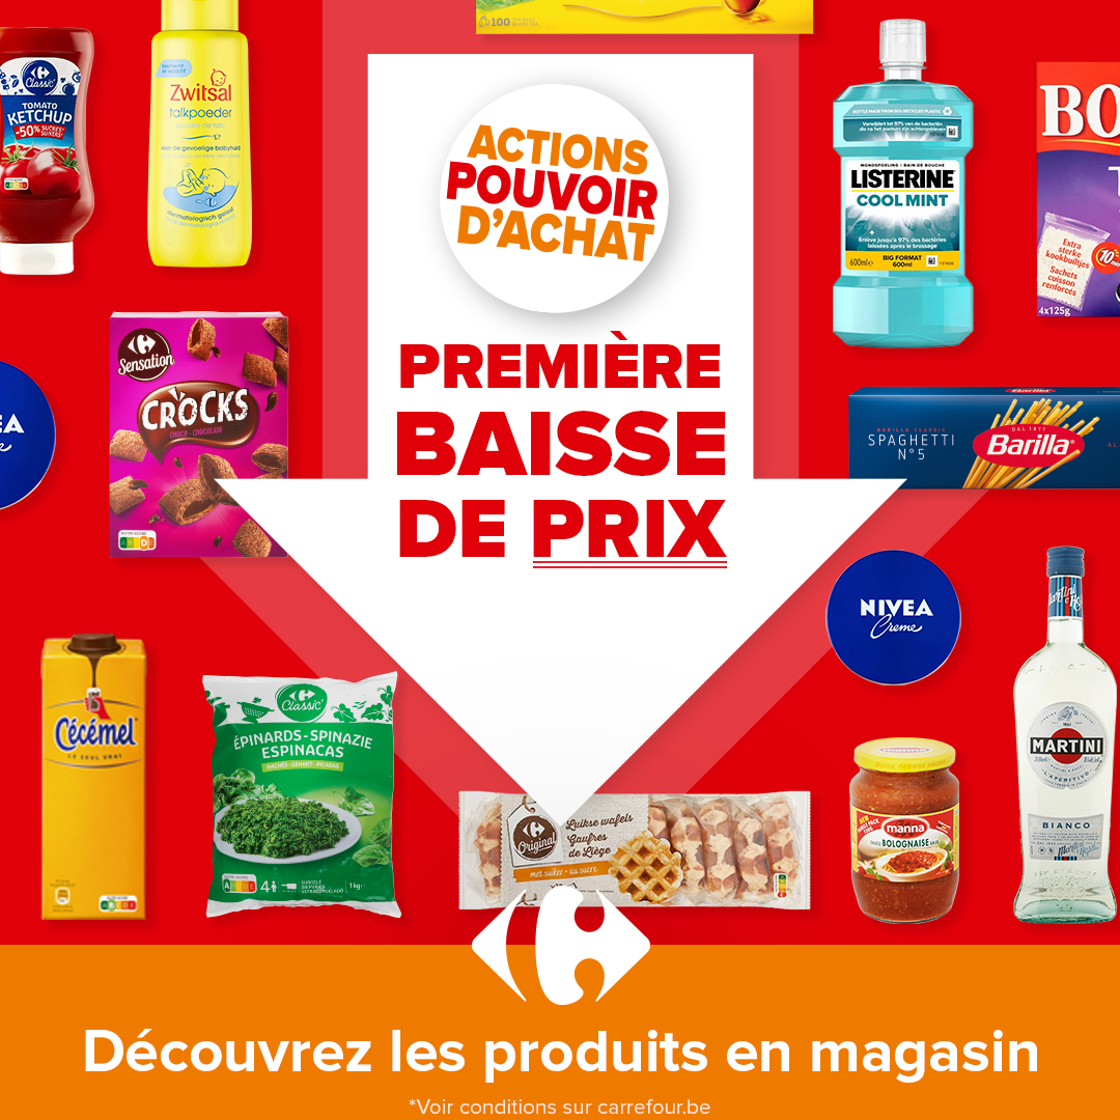 Nouvelle action pour renforcer le pouvoir d’achat : Carrefour lance une première vague de baisse de prix en 2023*